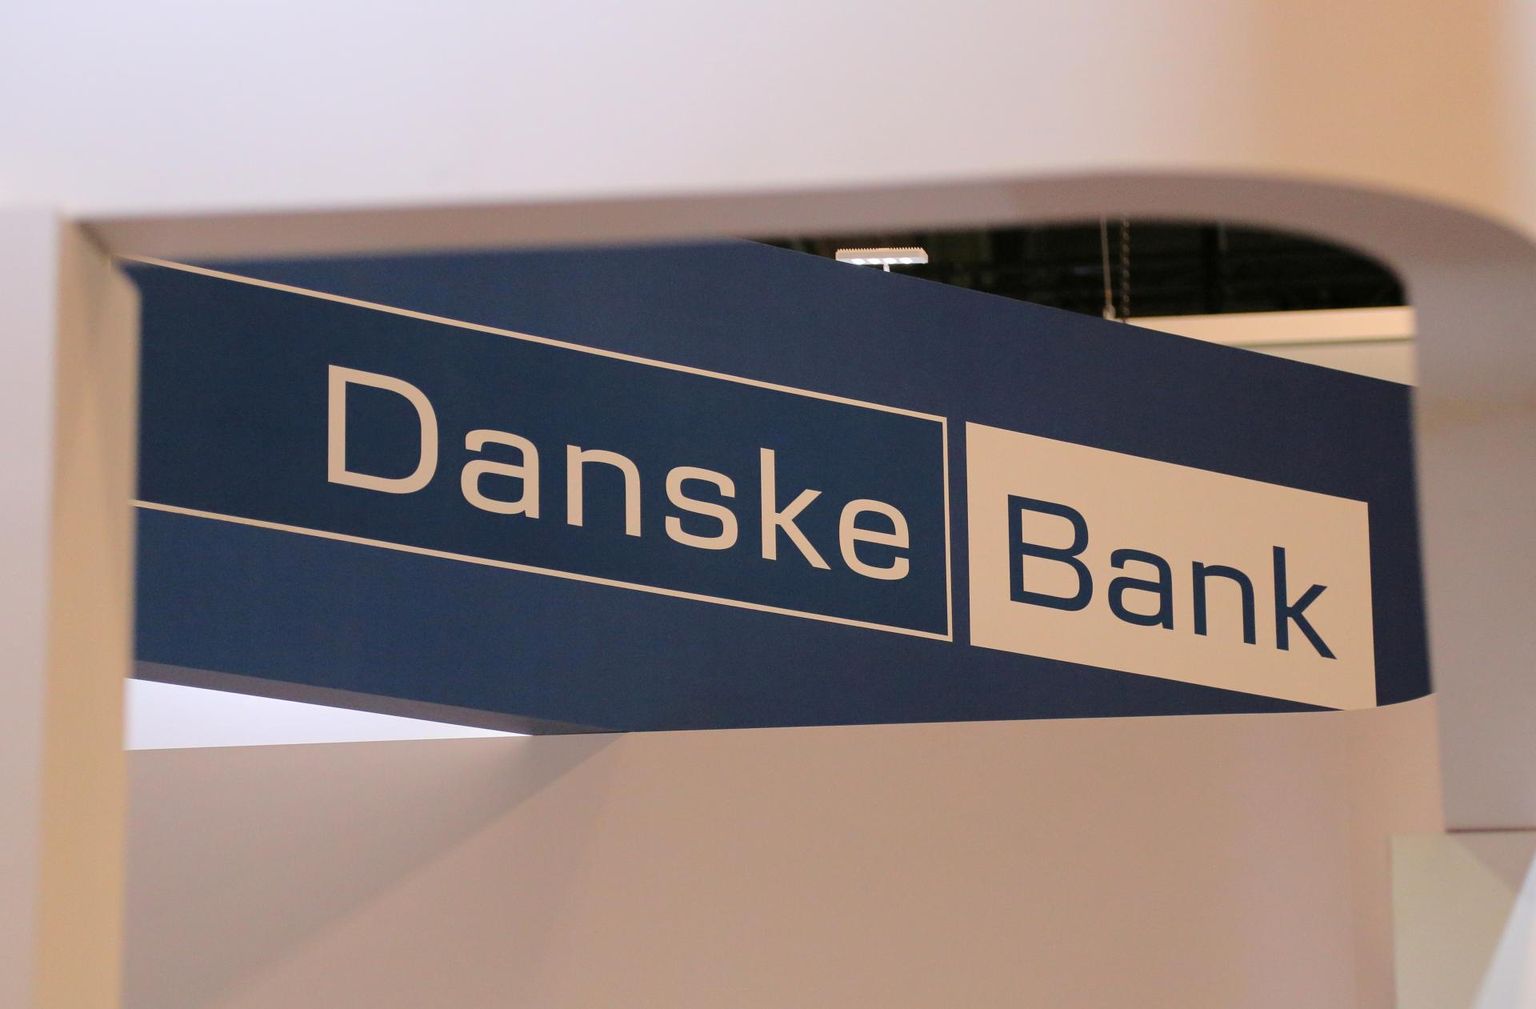 Danske pank.